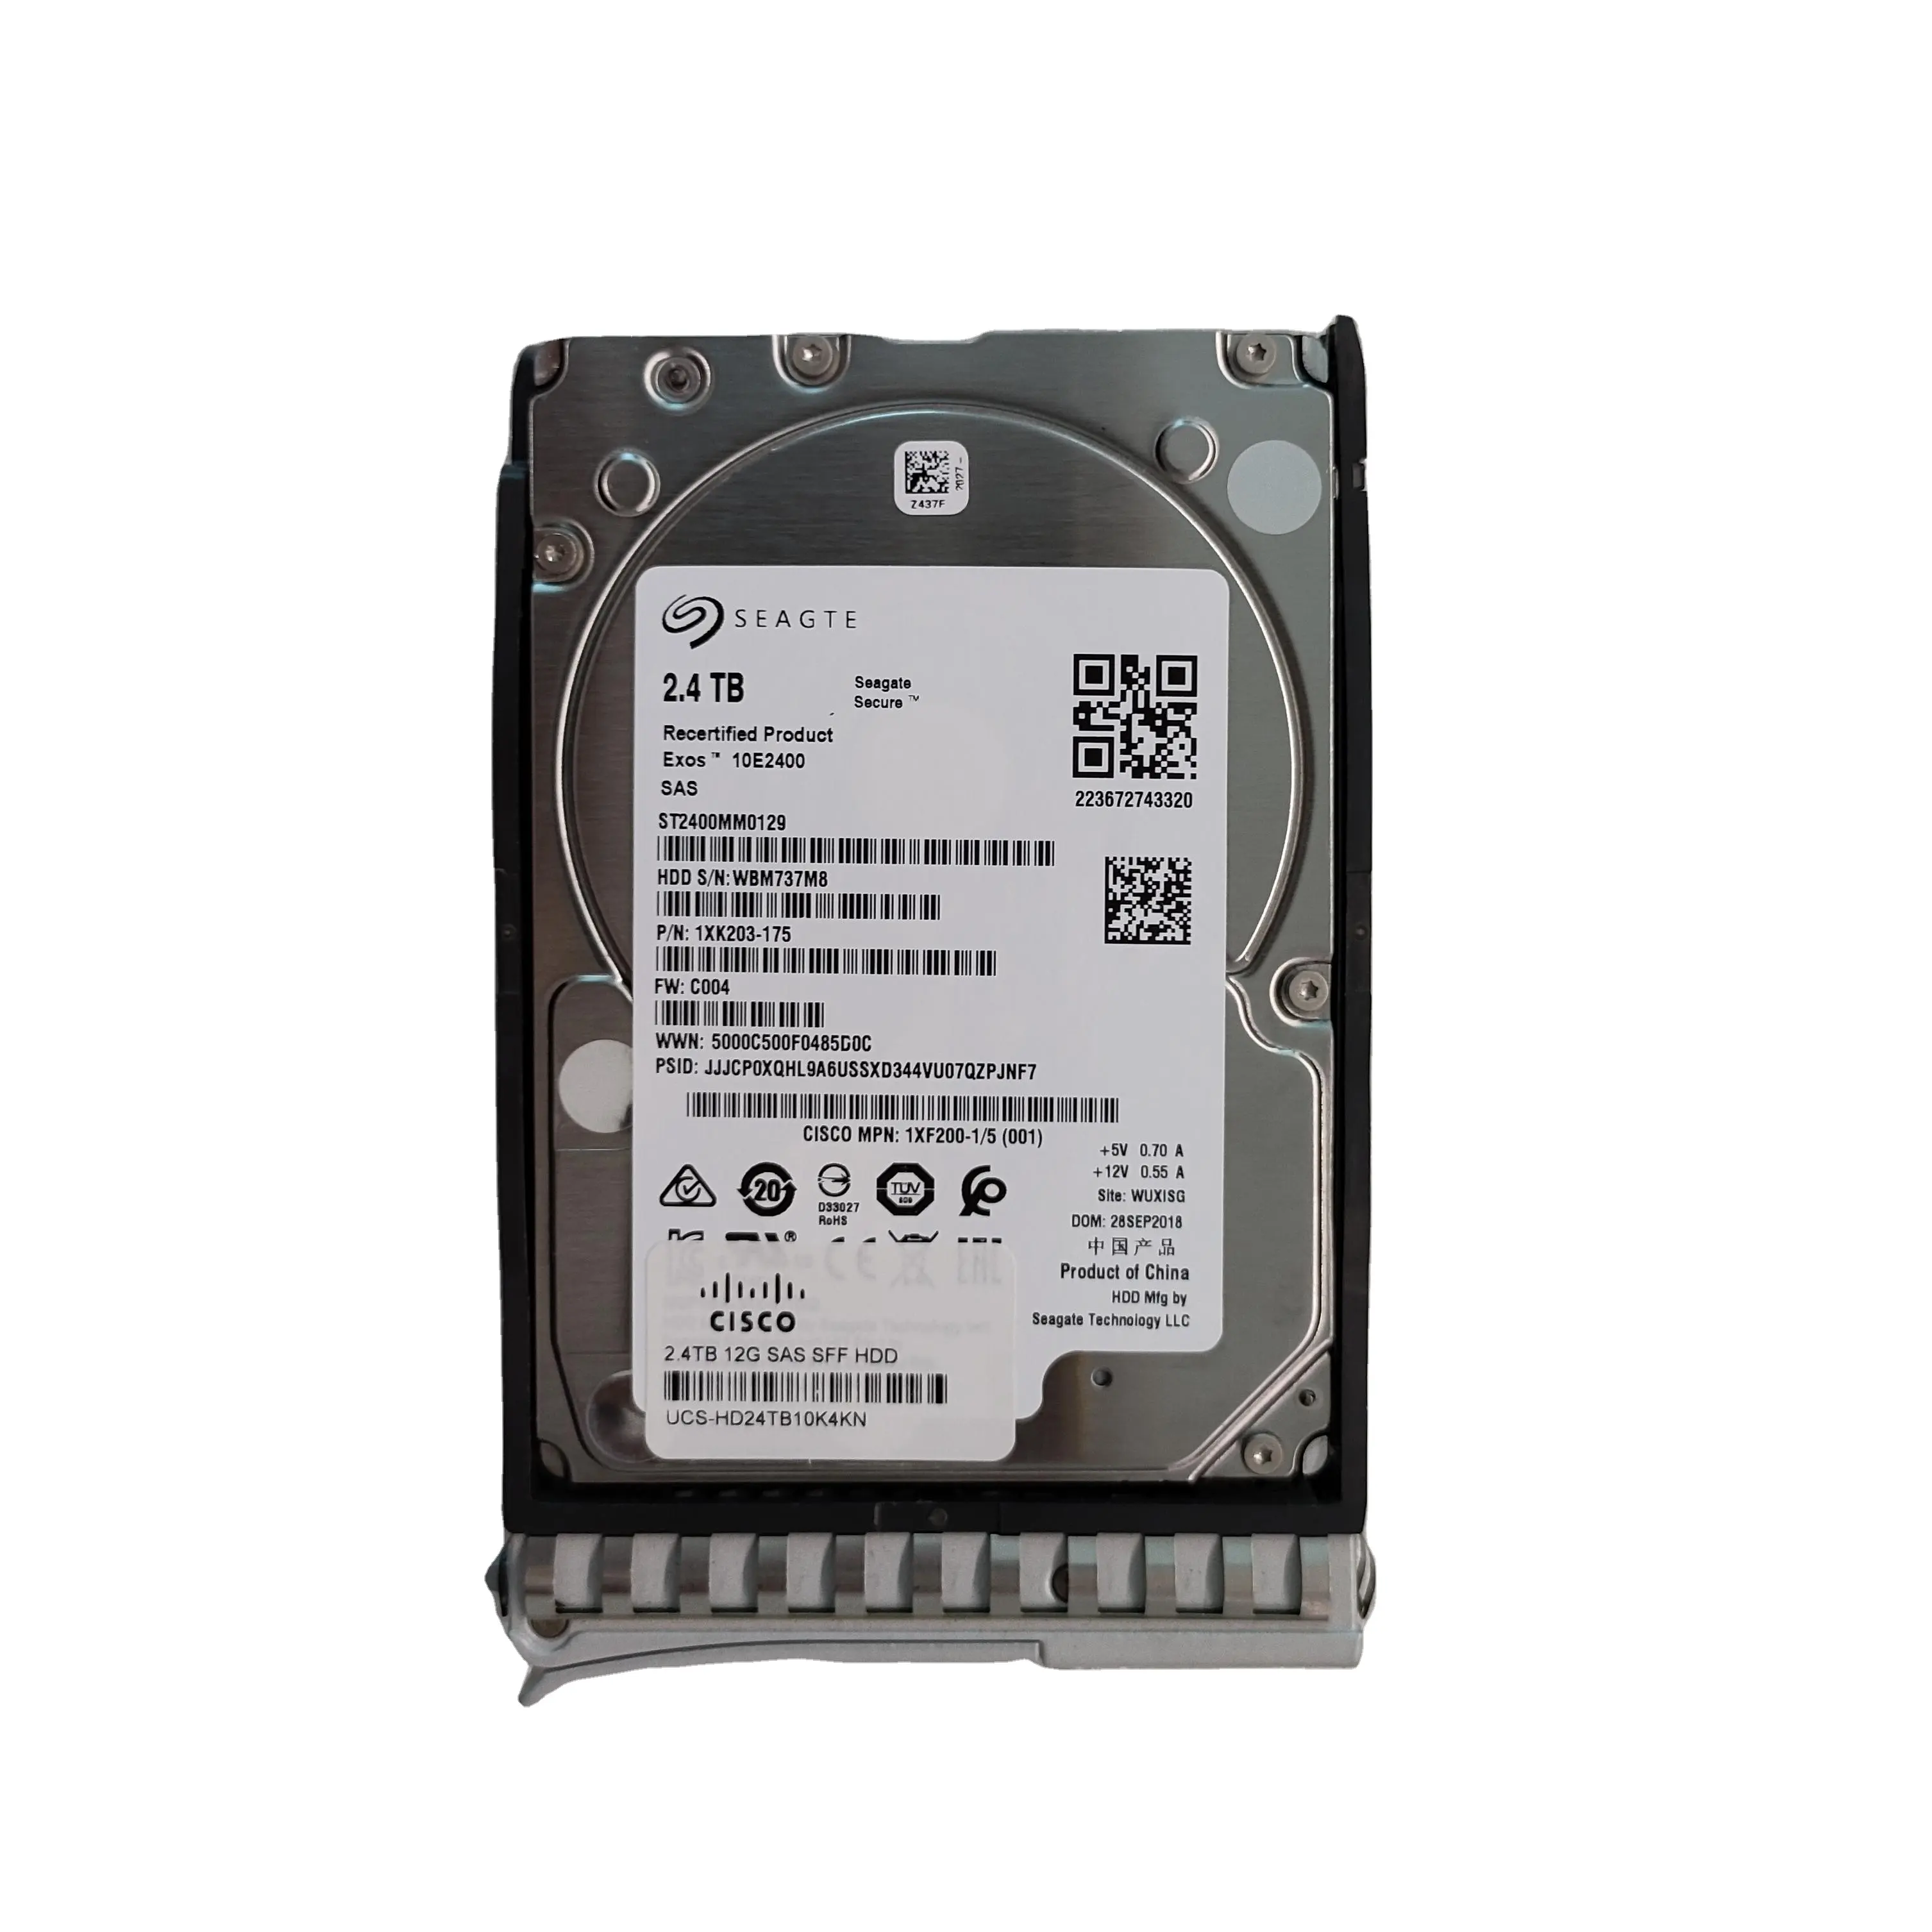 Enterprise hard disk UCS-HD24TB10K4KN 2.4T SAS 10K 12G 2.5 M5 hdd